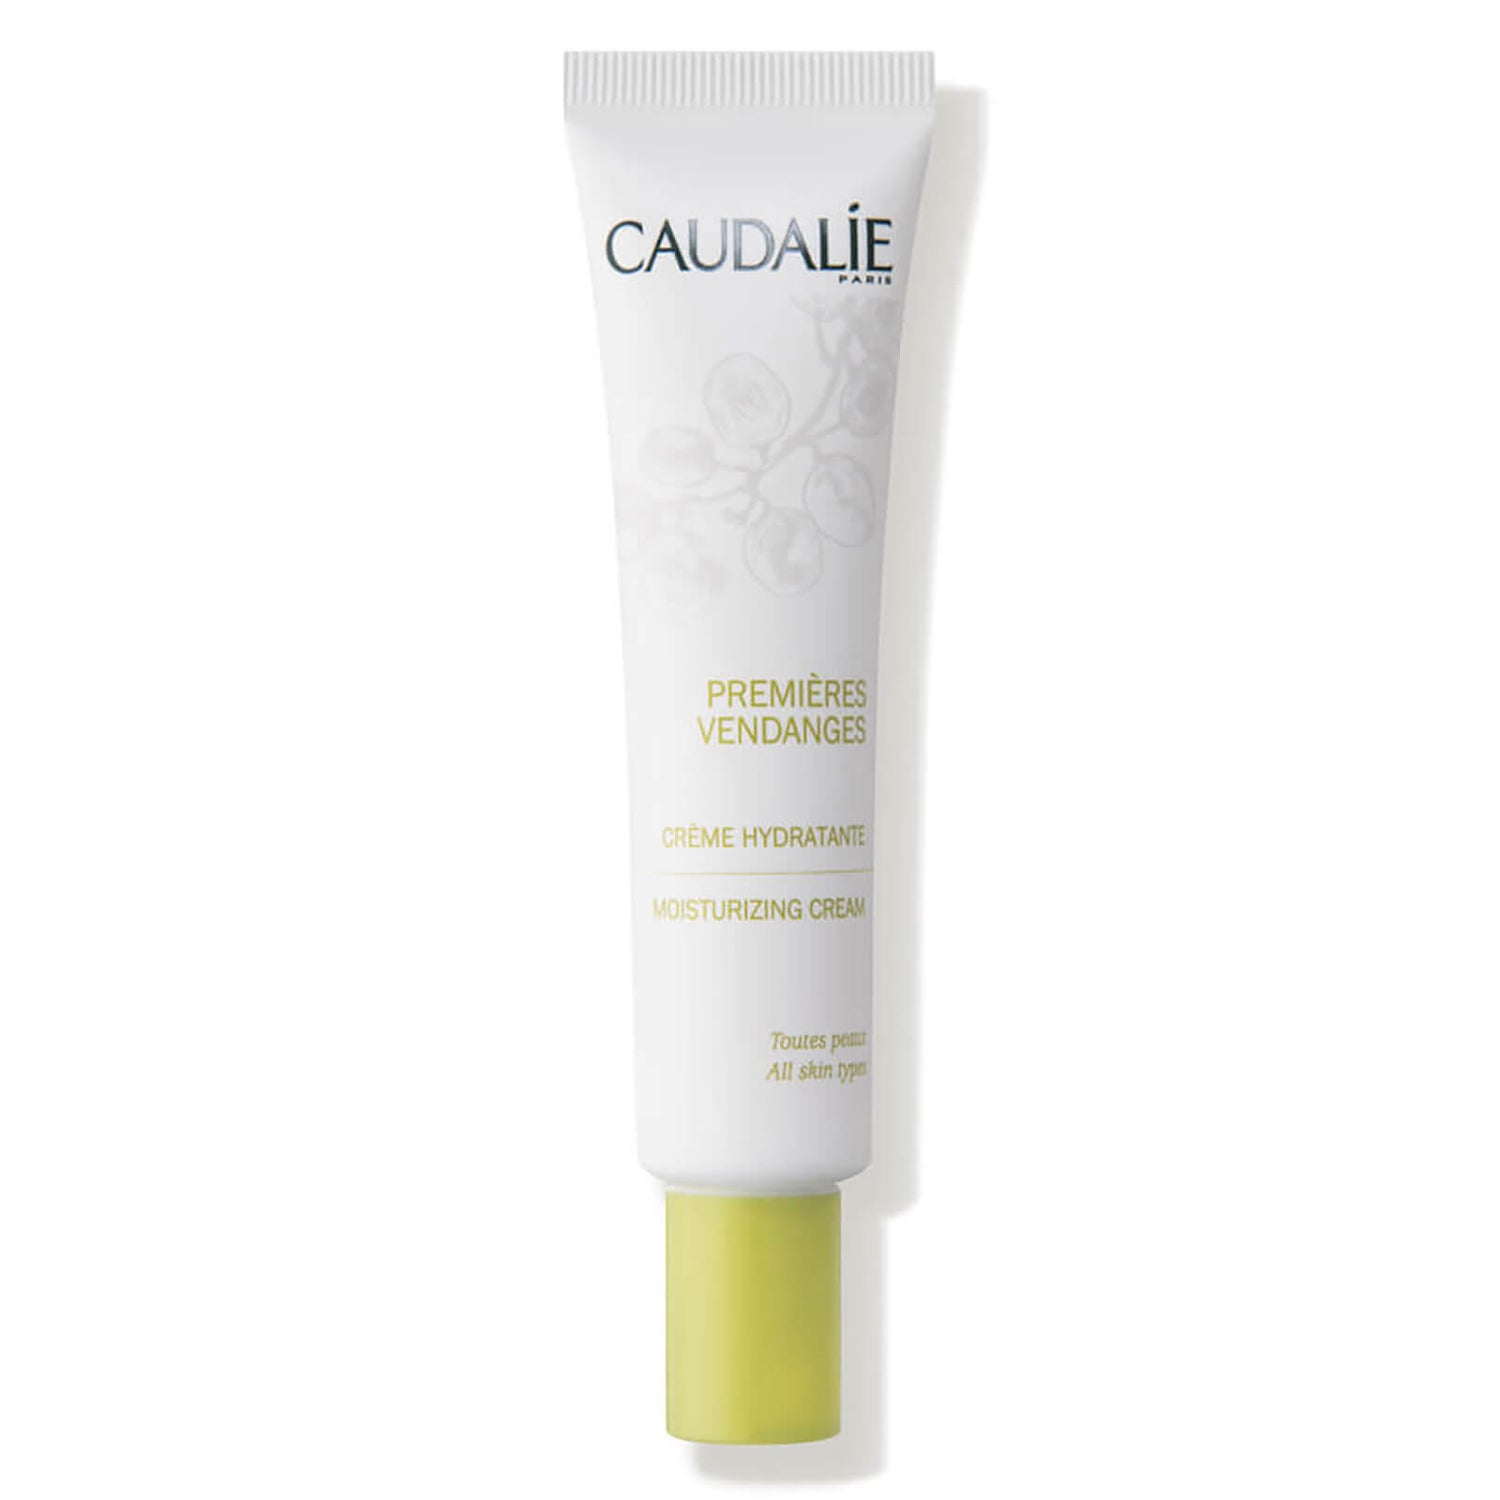 Caudalie Premieres Vendanges Moisturisng Cream (40ml)